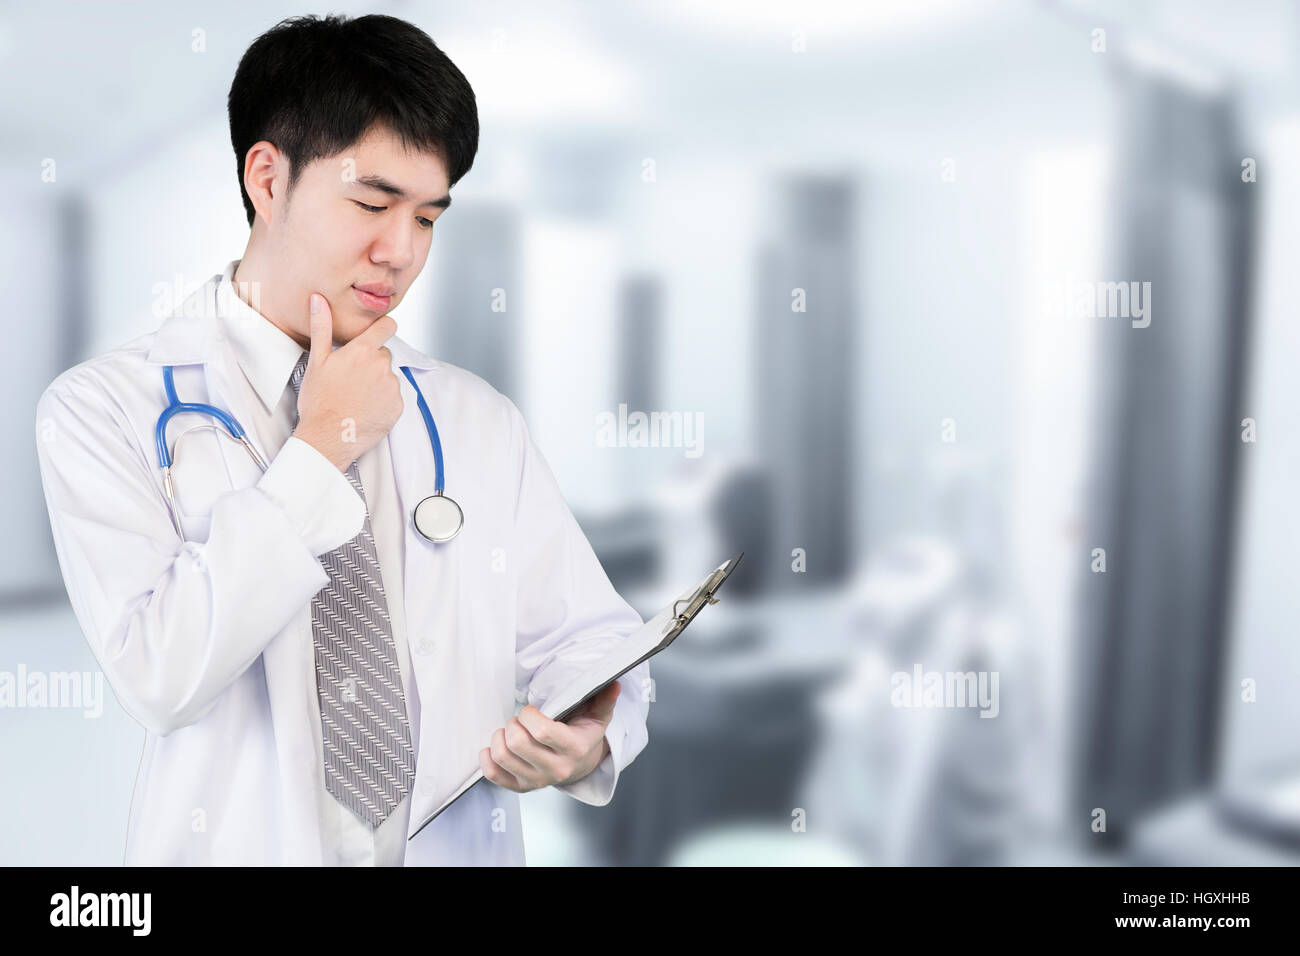 Portrait of Asian doctor holding patient fichier graphique dans un hôpital moderne. Médecin asiatique à la recherche et l'analyse du fichier fichier. Banque D'Images